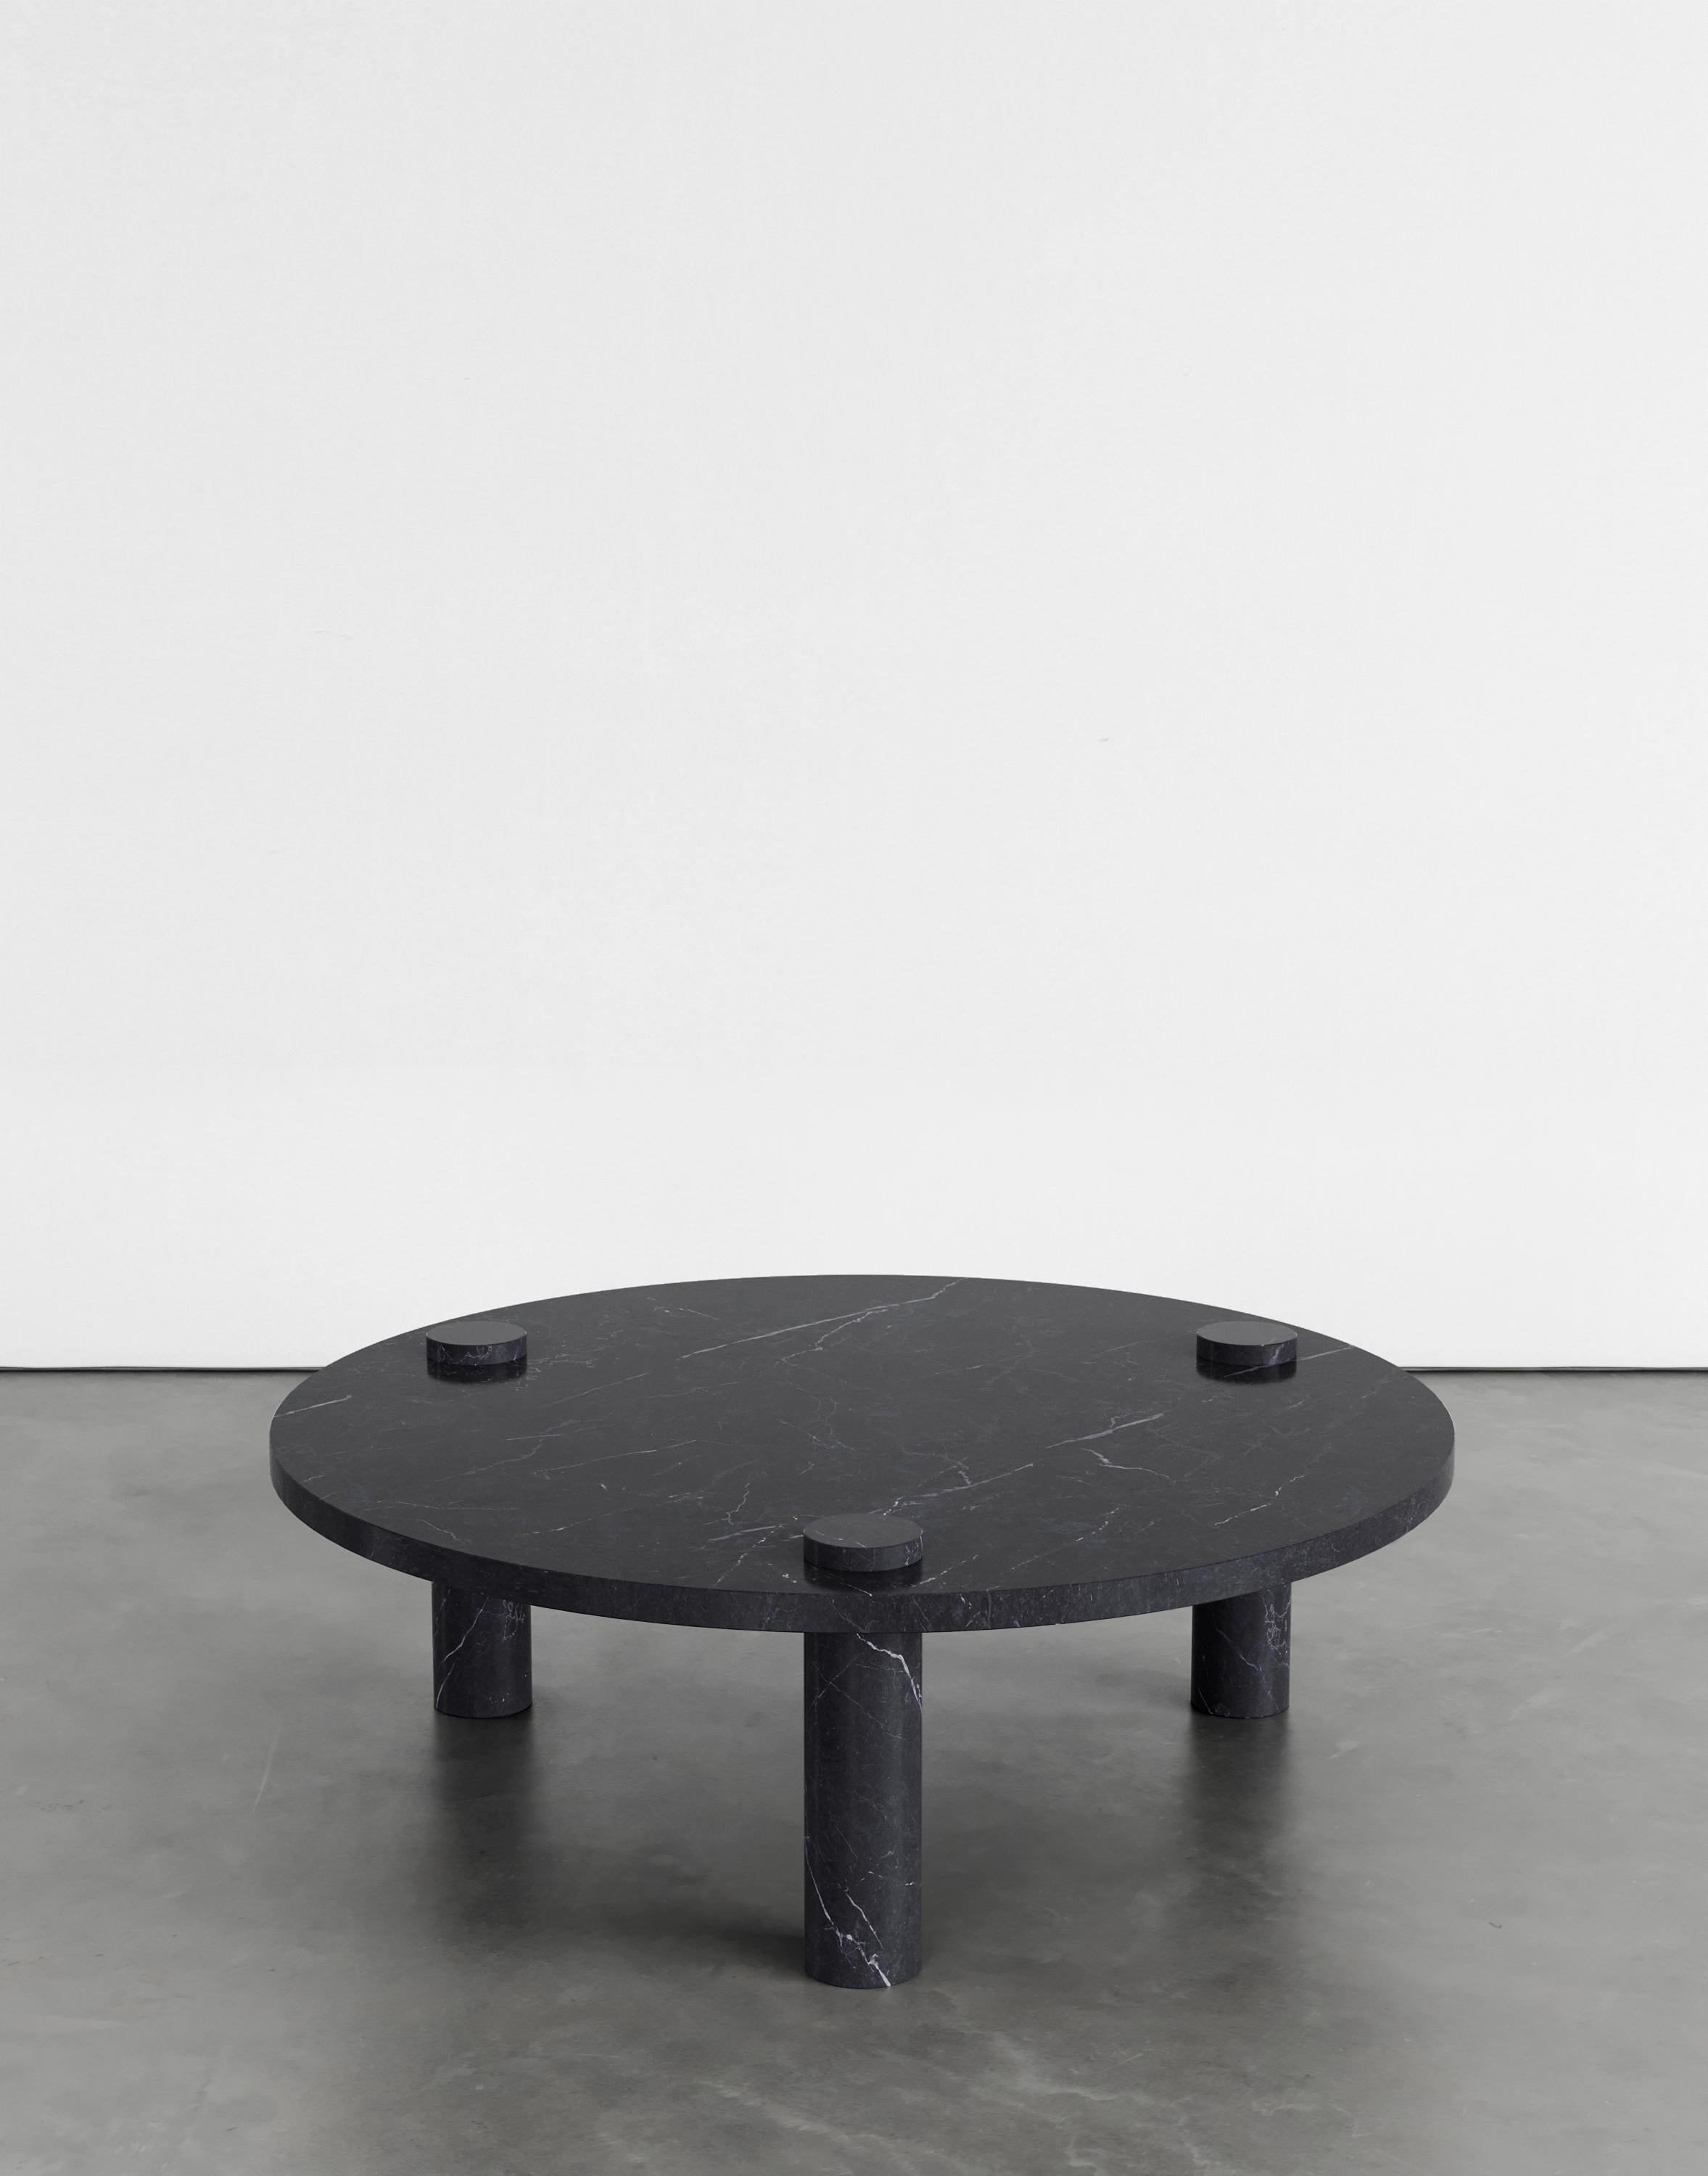 Table basse Sienna 100 par Agglomerati 
Dimensions : L 100 x H 33 cm 
Matériaux : Marquina noir. Disponible dans d'autres pierres. 

Agglomerati est un studio basé à Londres qui crée des meubles en pierre distinctifs. Fondé en 2019 par le